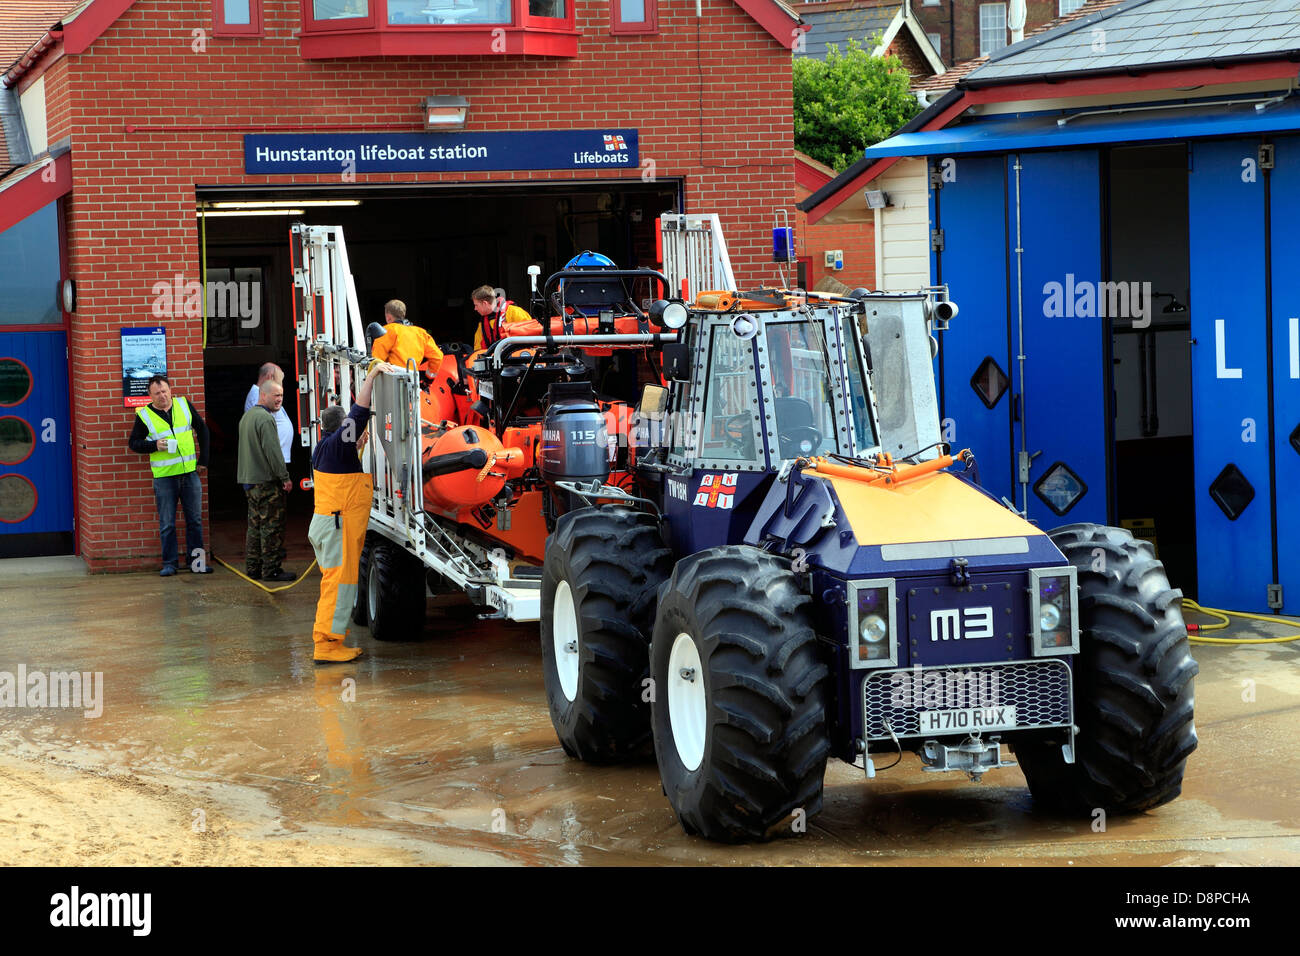 La estación de botes salvavidas Hunstanton, Norfolk, Inglaterra, Reino Unido RNLI, R N L I, tractor Foto de stock